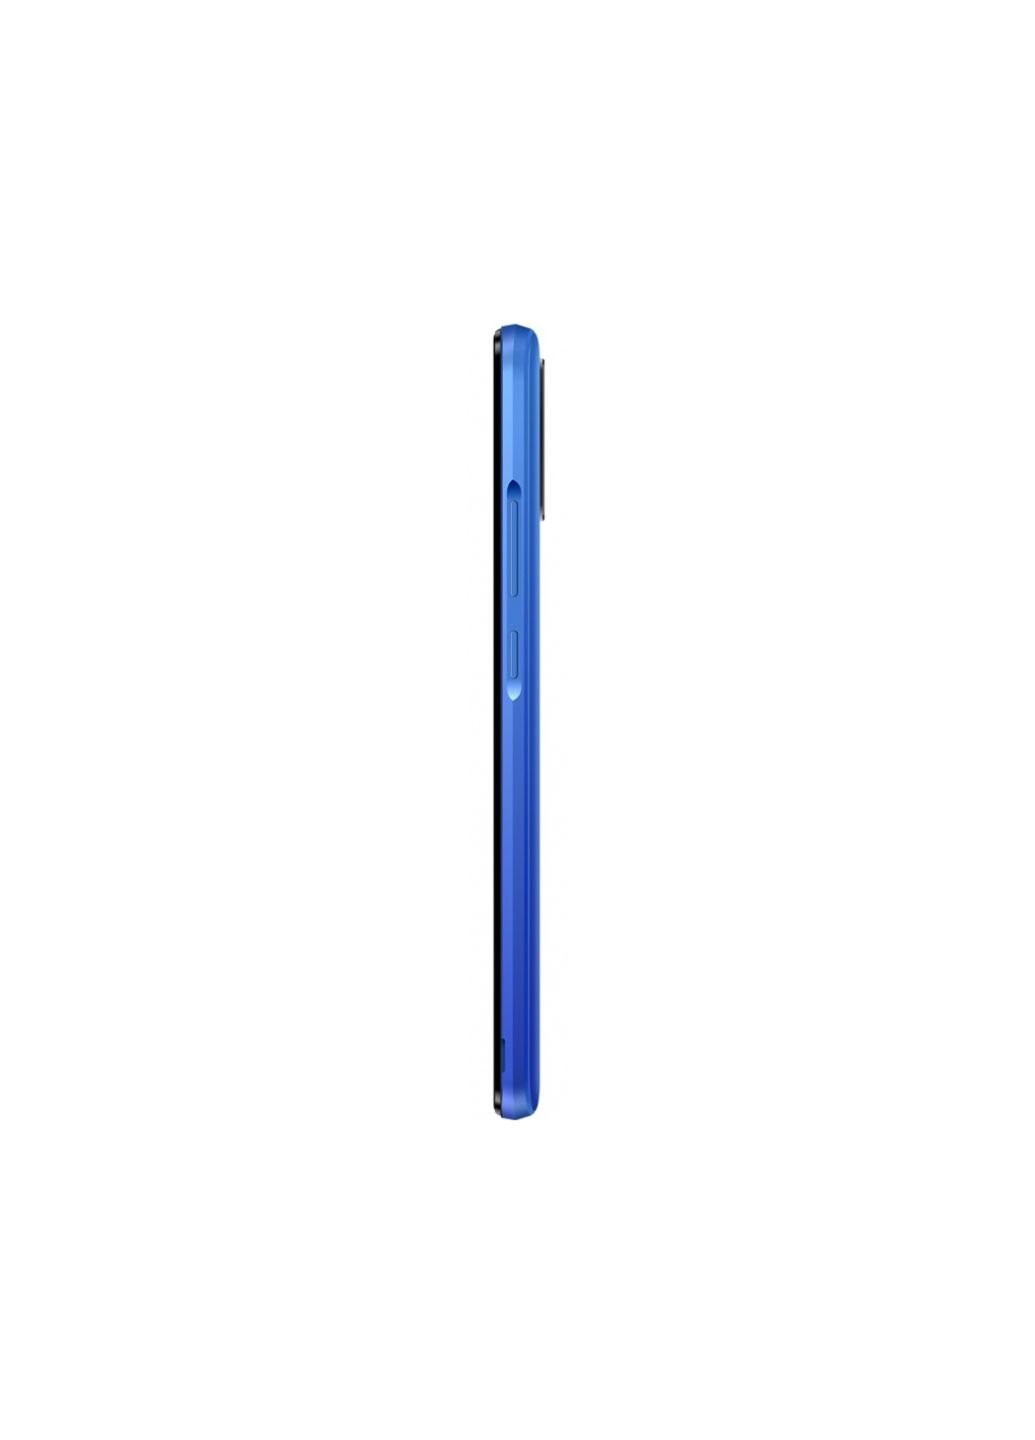 Мобильный телефон Doogee x96 pro 4/64gb blue (253507400)